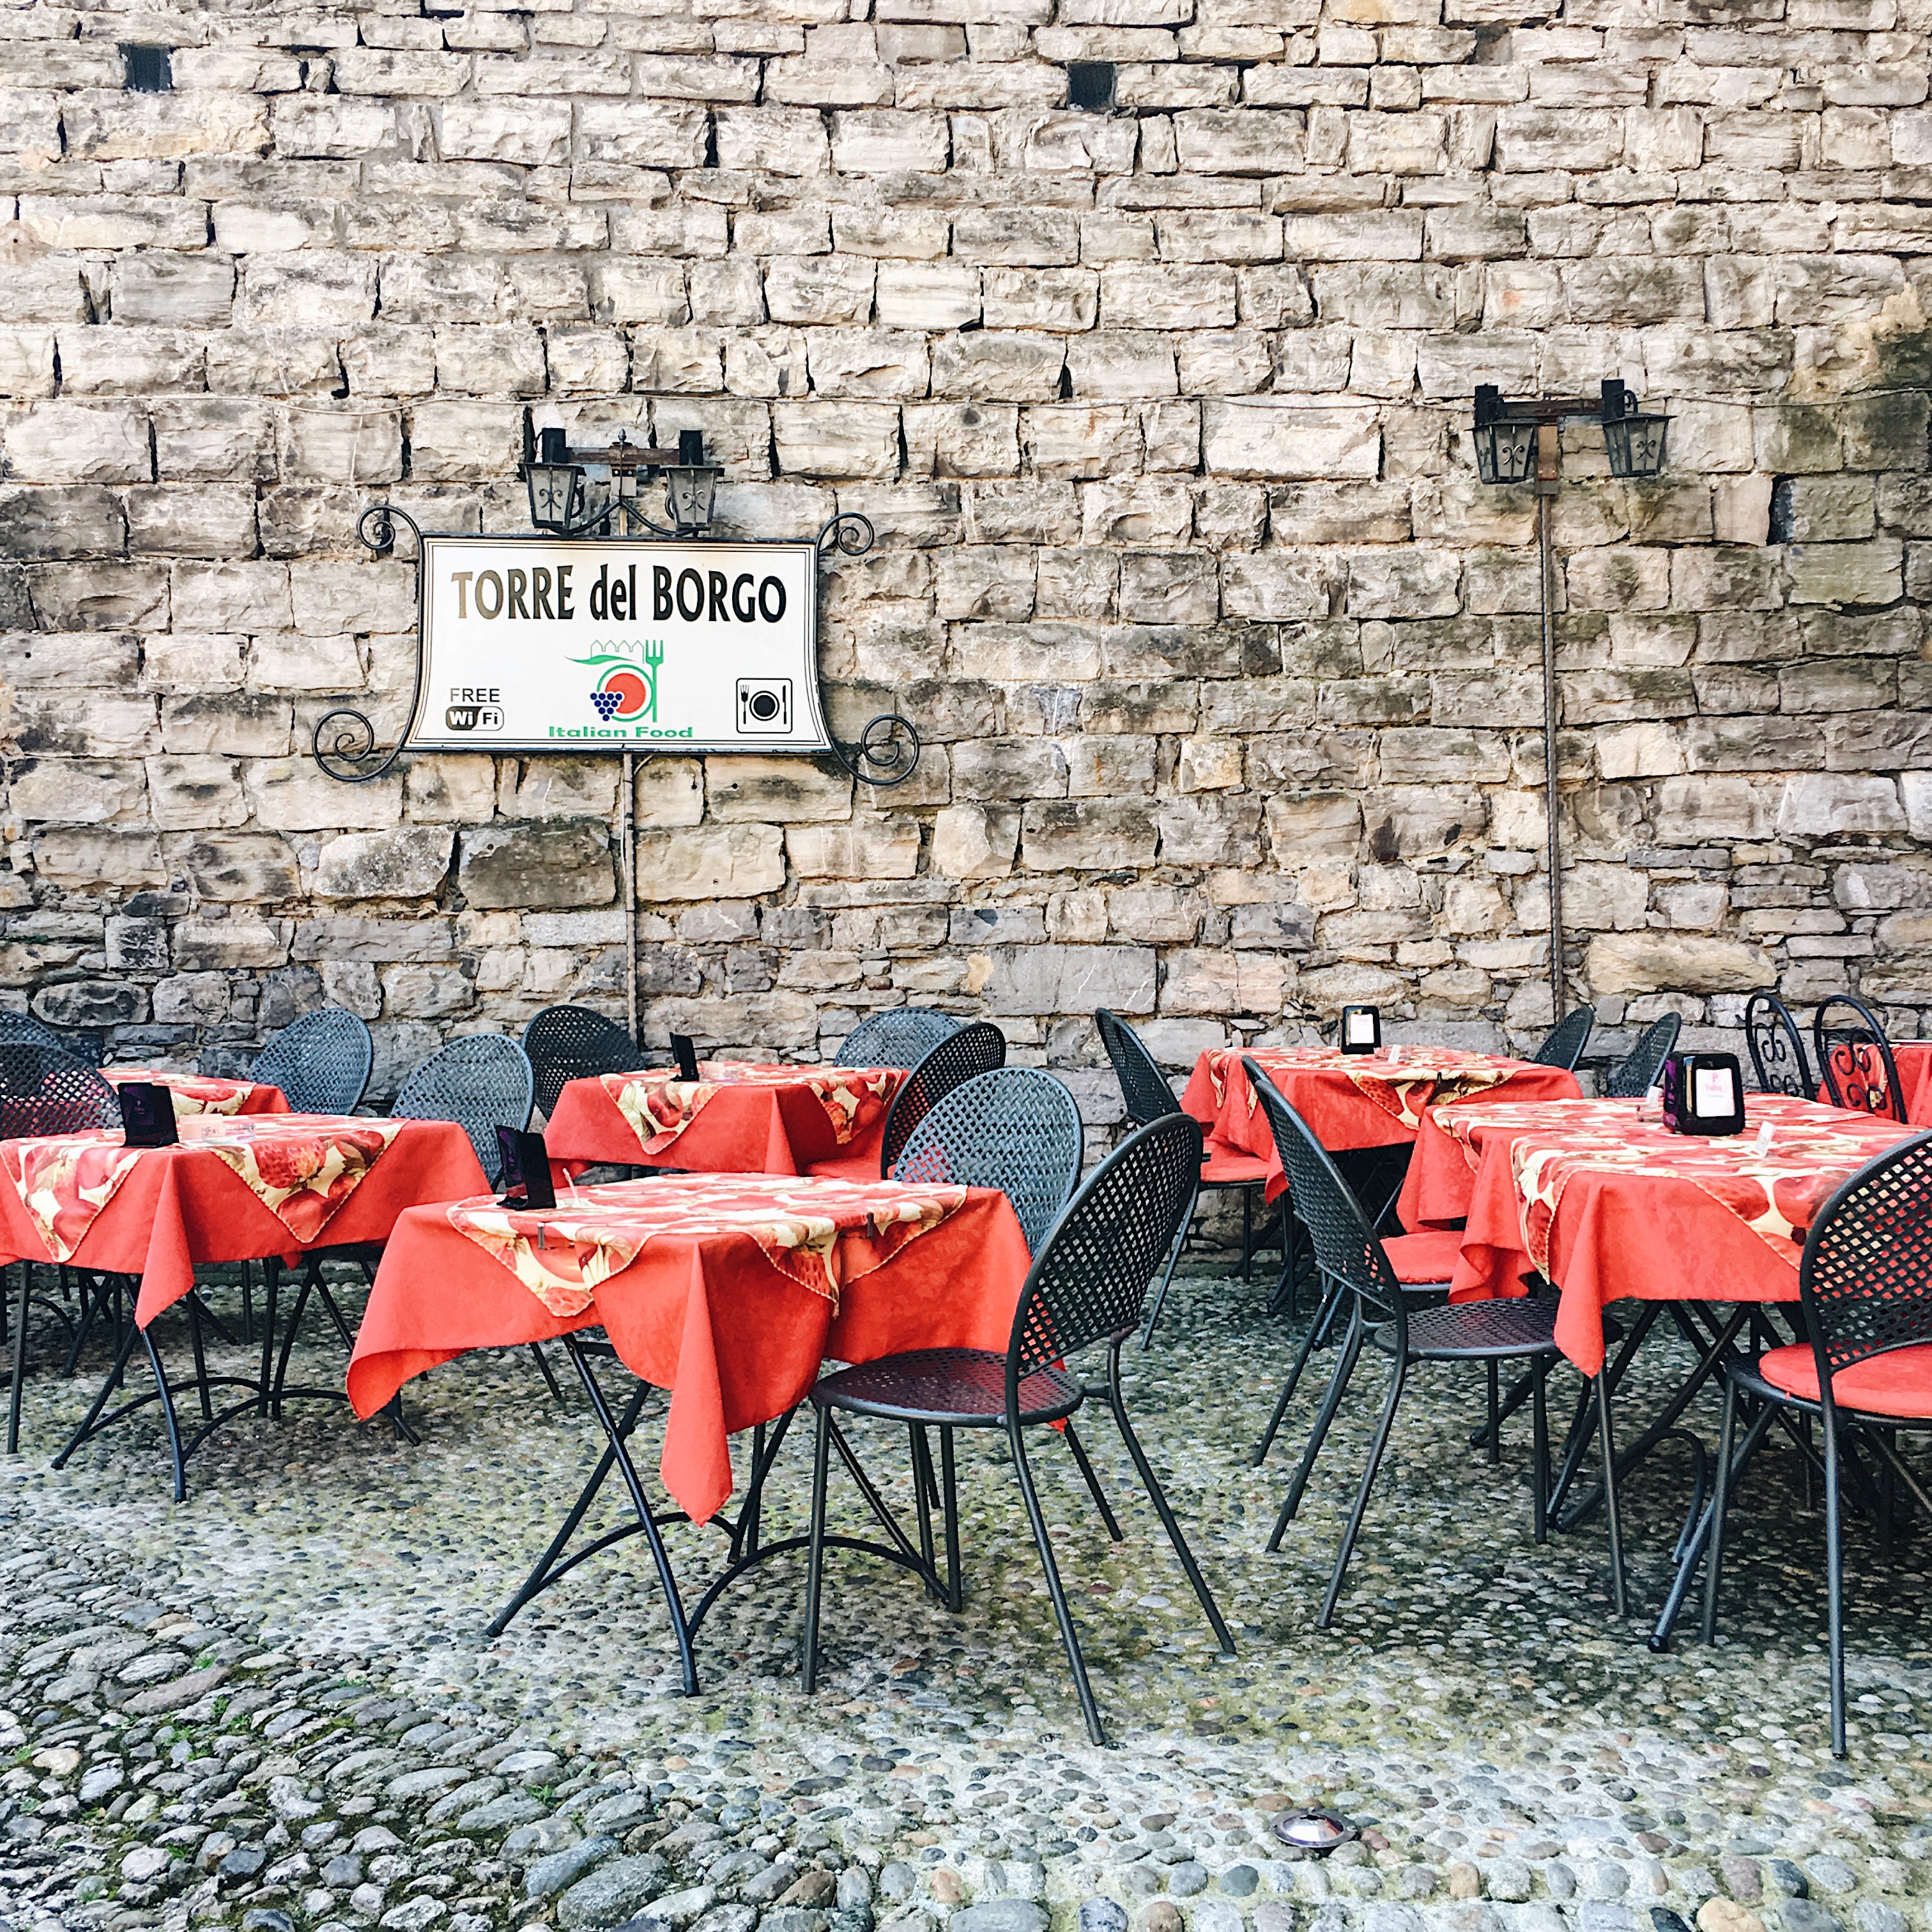 Roaming italian alleyways in Como